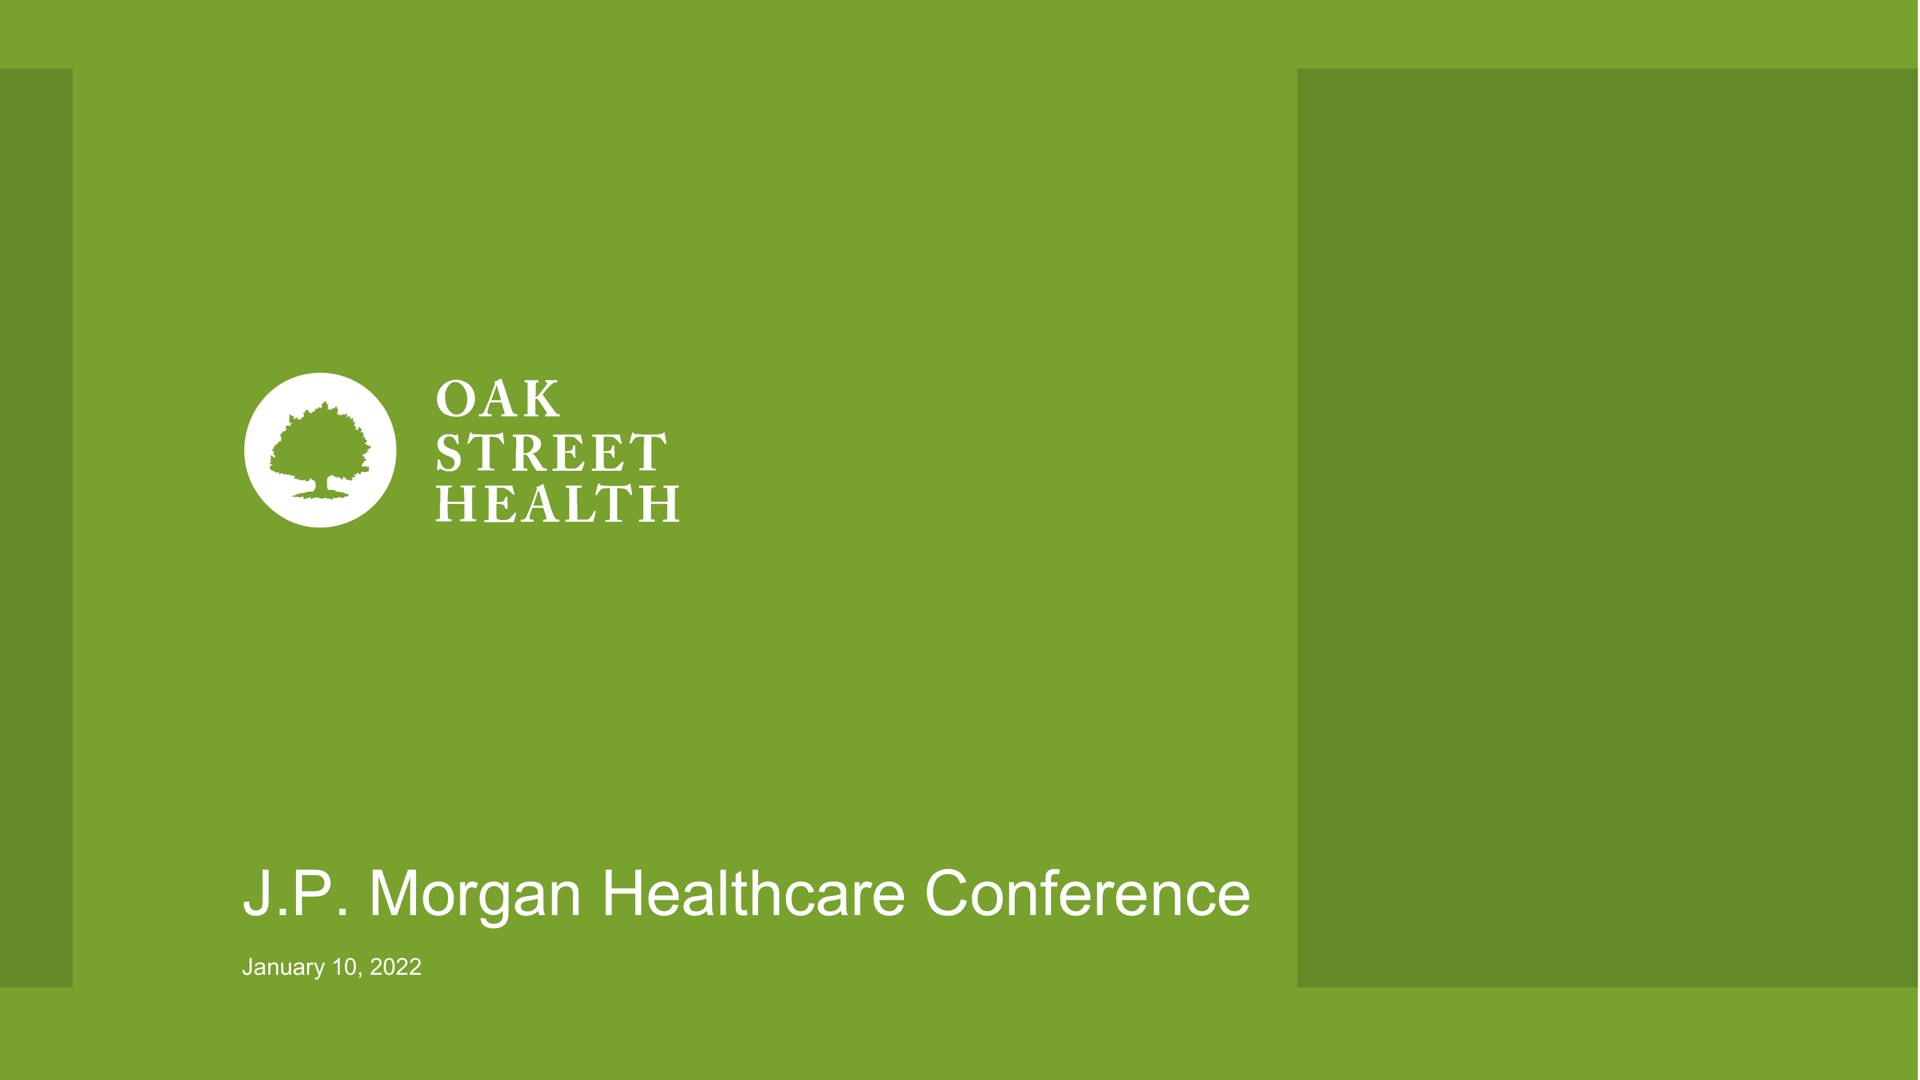 morgan conference oak street health | Oak Street Health